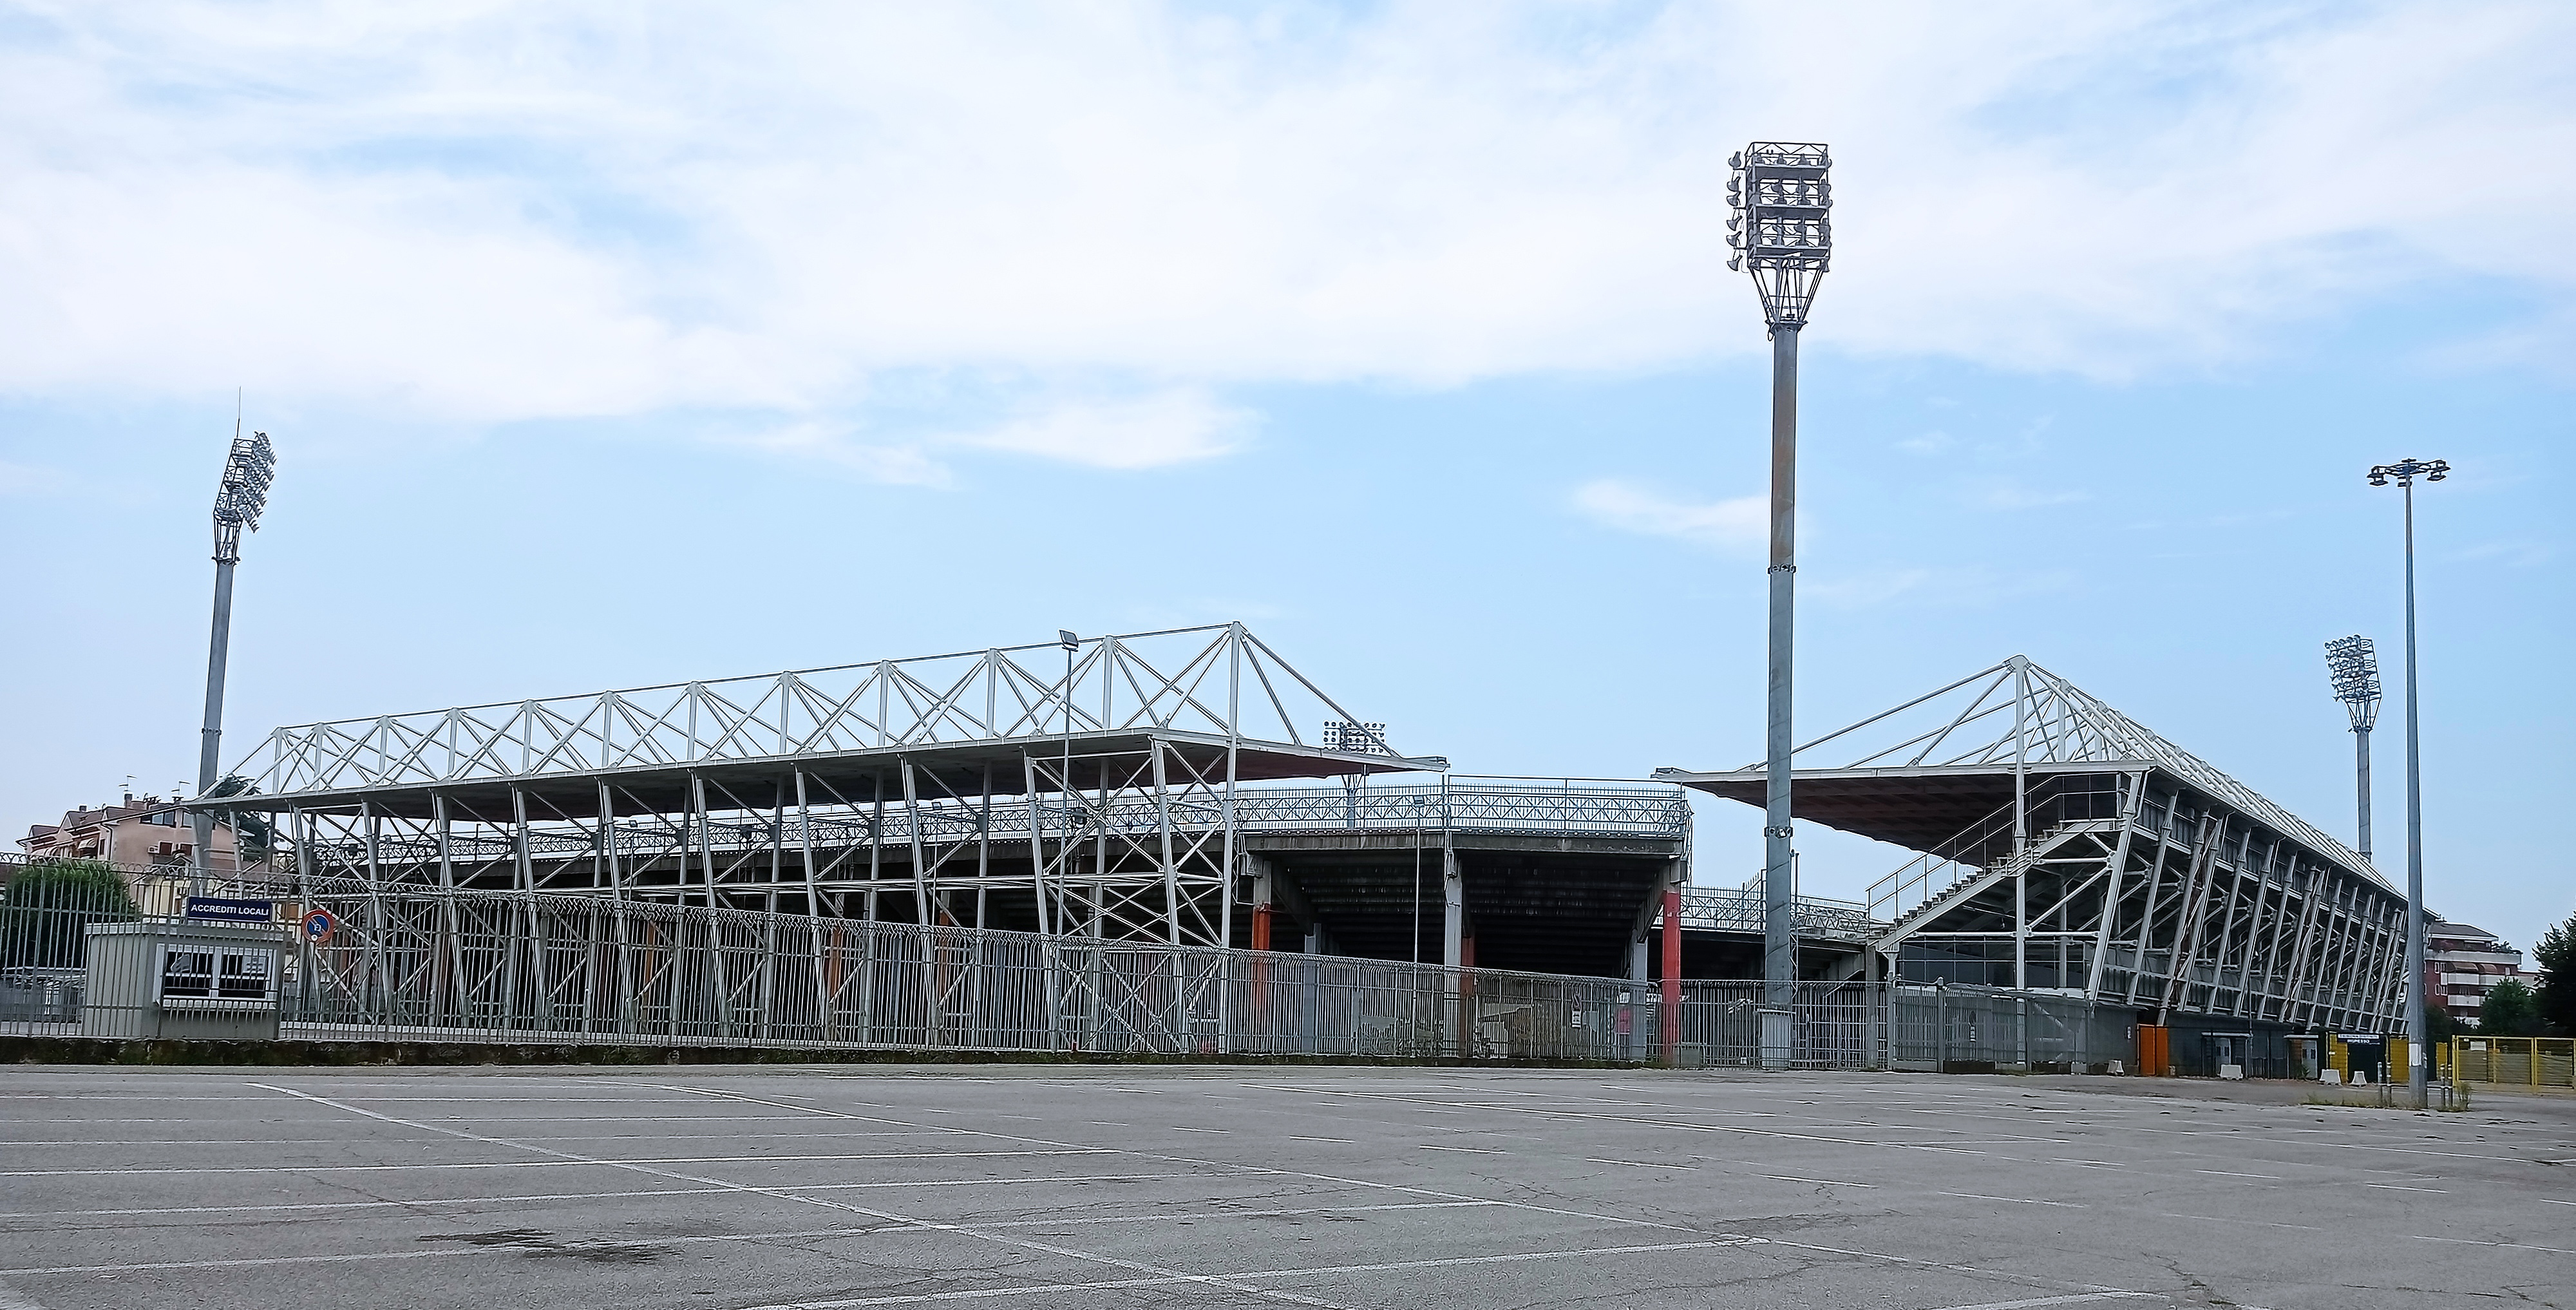 Tribuna Stadio comunale "G. Zini" (stadio, comunale) - Cremona (CR)  (XX)